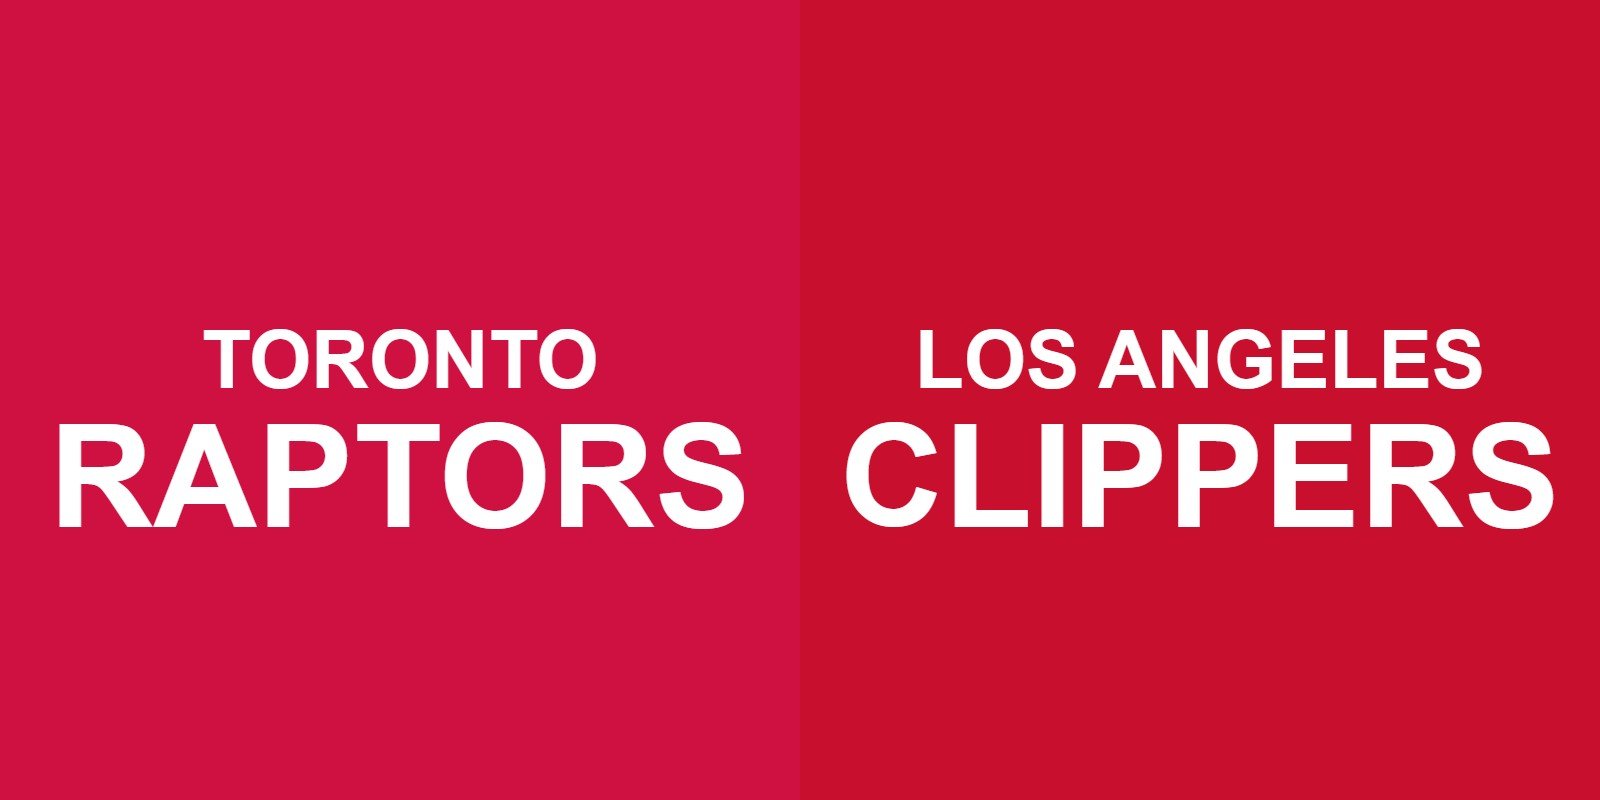 Raptors vs Clippers